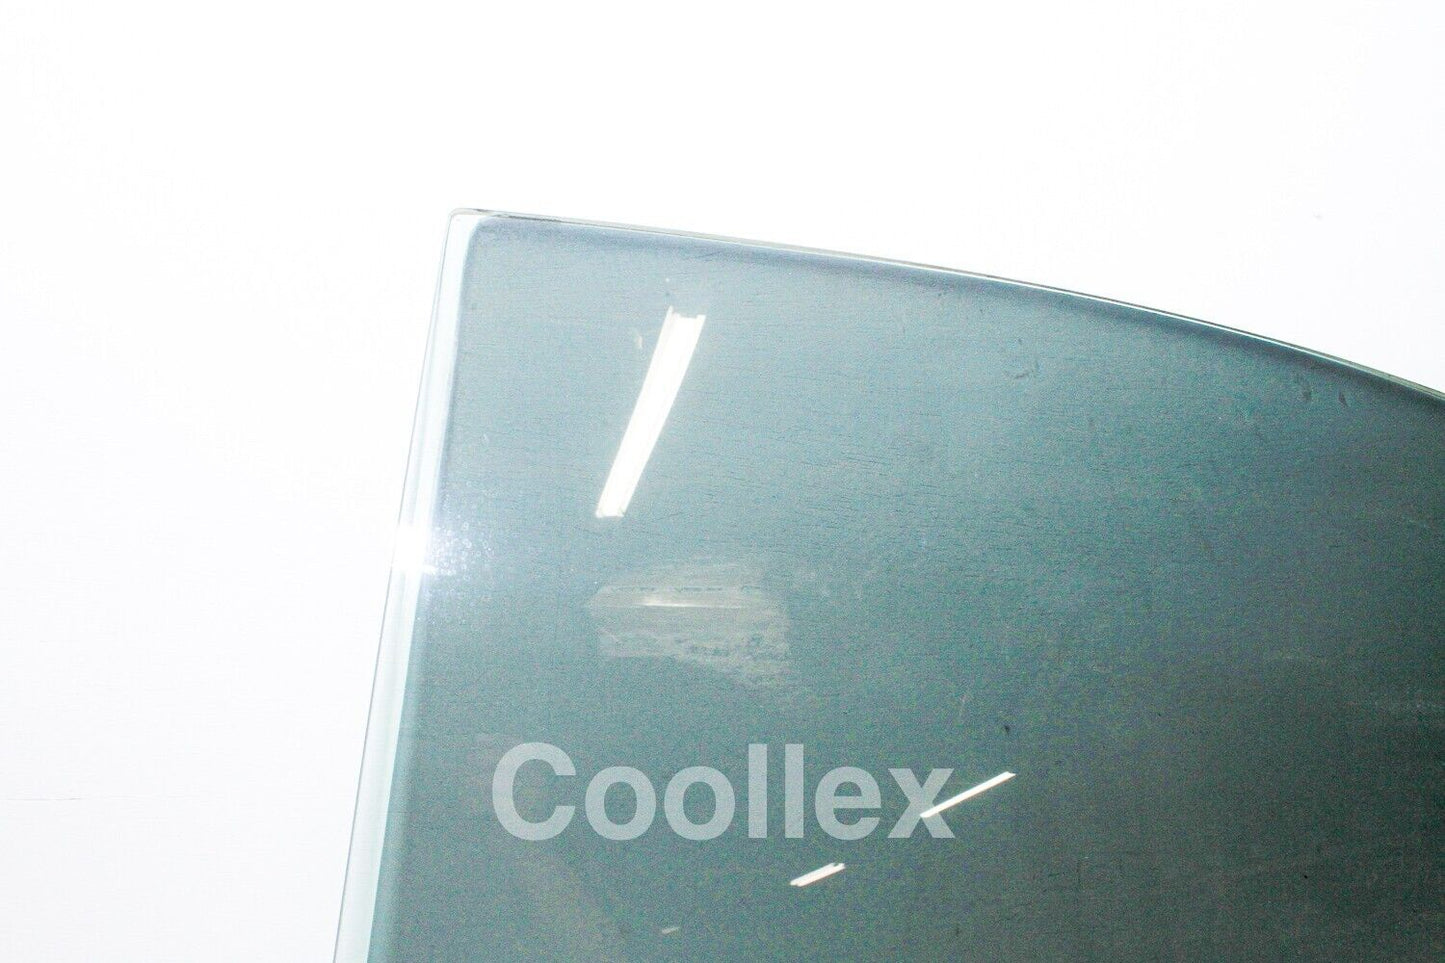 06-13 Lexus Is250 Awd Rear left Door Window Glass 68114-53132 Oem